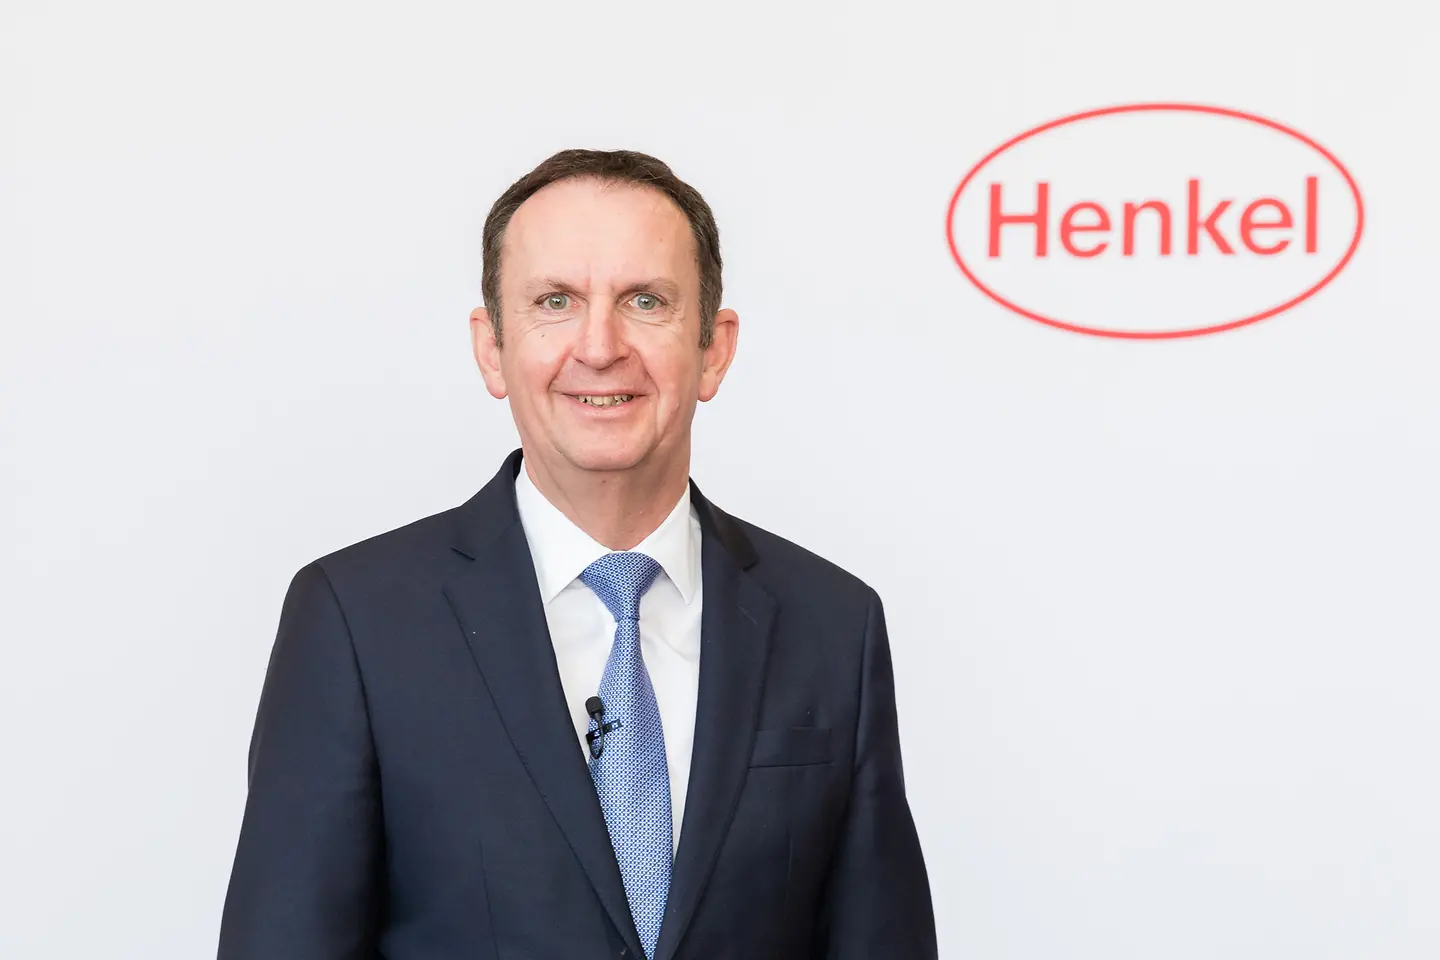 
Henkel CEO Hans Van Bylen